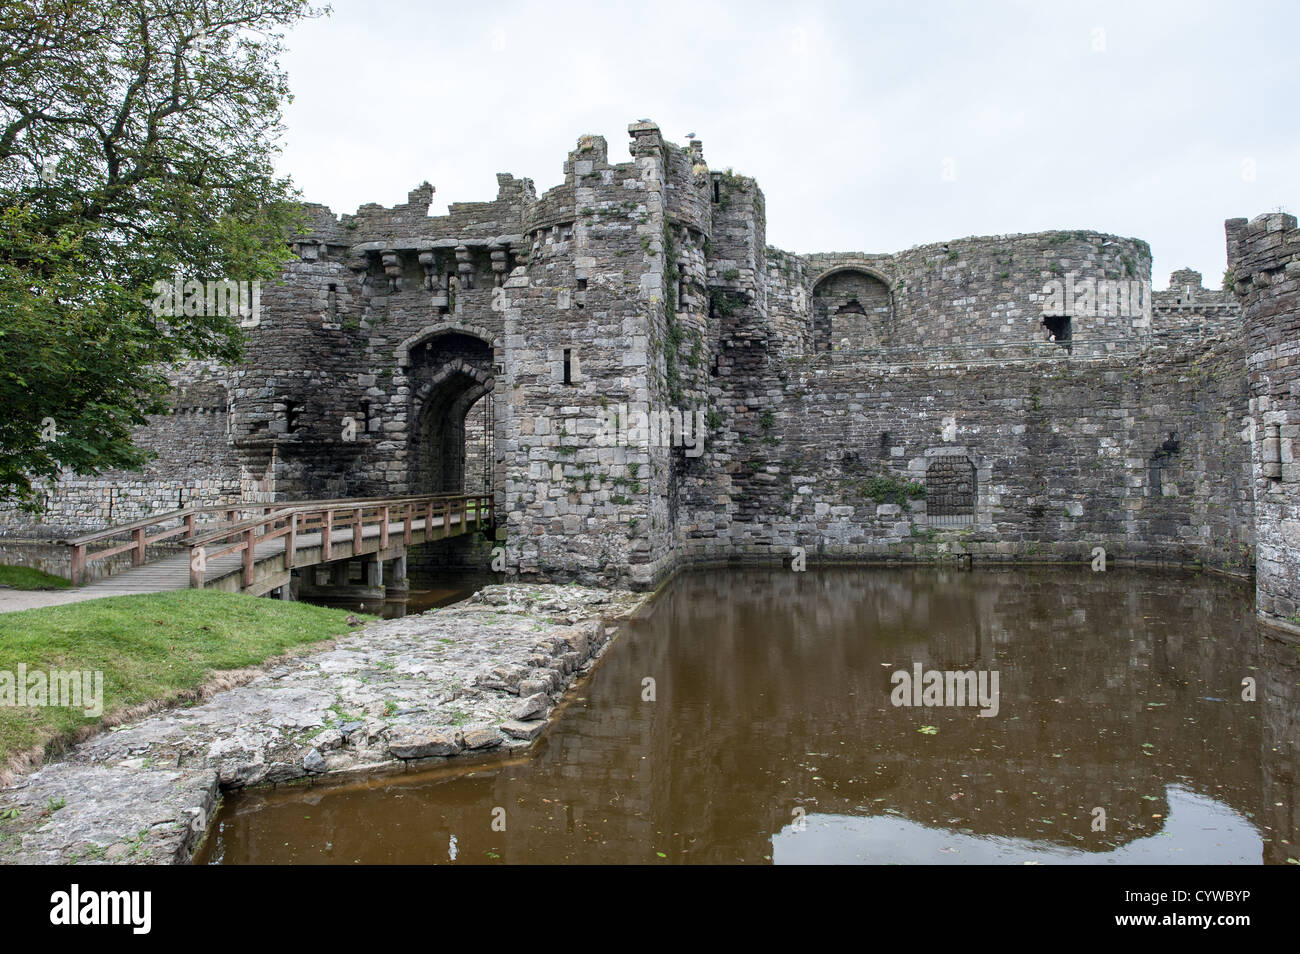 BEAUMARIS, Galles - un cancello d'ingresso al Castello di Beaumaris sull'isola di Anglesey della costa settentrionale del Galles, Regno Unito. Il castello risale al 13th ° secolo ed è uno dei numerosi commissionati da Edoardo I. La pittoresca cittadina costiera di Beaumaris, situata sull'isola di Anglesey, in Galles, offre ai visitatori uno sguardo alla ricca storia della zona, con il suo castello medievale, l'architettura vittoriana e il panoramico lungomare. Il Beaumaris è stato dichiarato patrimonio dell'umanità dall'UNESCO e continua a affascinare i viaggiatori con i suoi monumenti ben conservati e le sue splendide bellezze naturali. Foto Stock